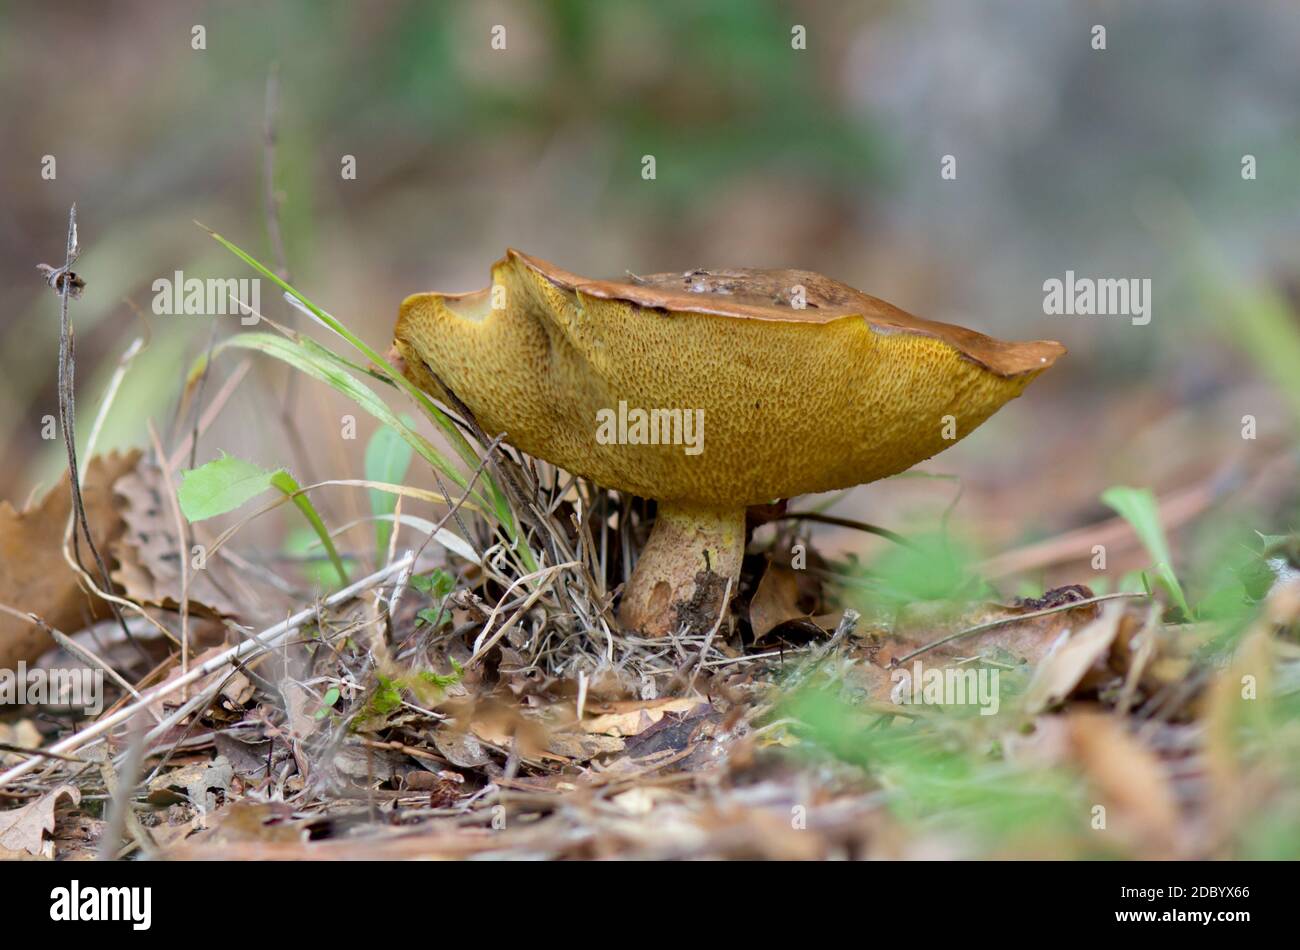 Suillus collinitus, edible mushroom in forest, Andalucia, Spain. Stock Photo